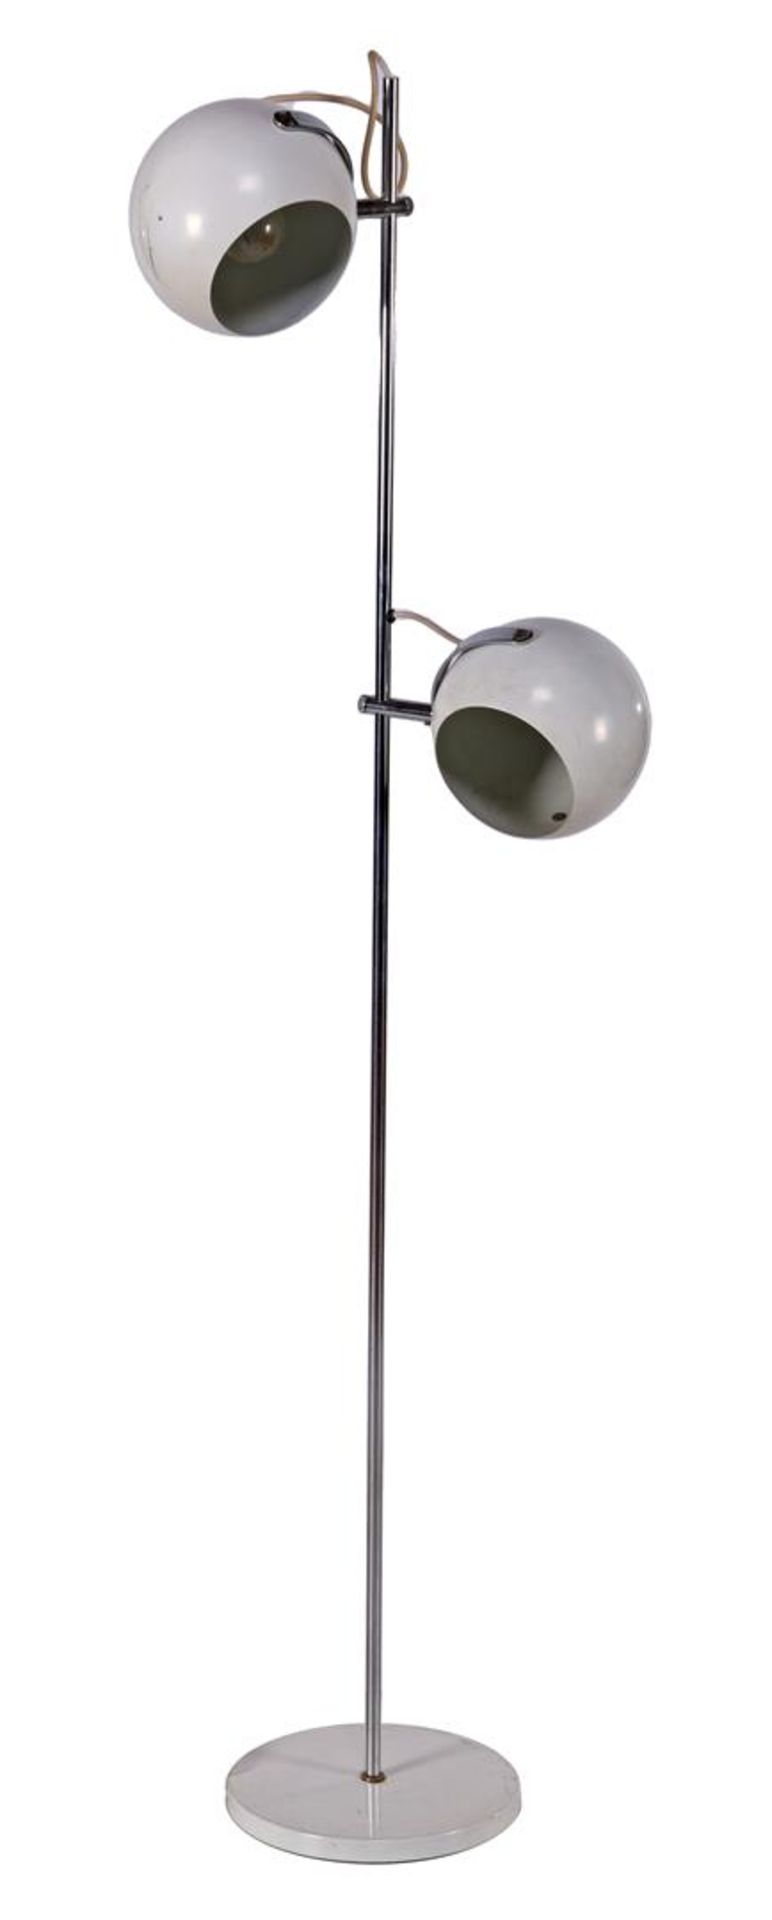 Chrome 2-light floor lamp